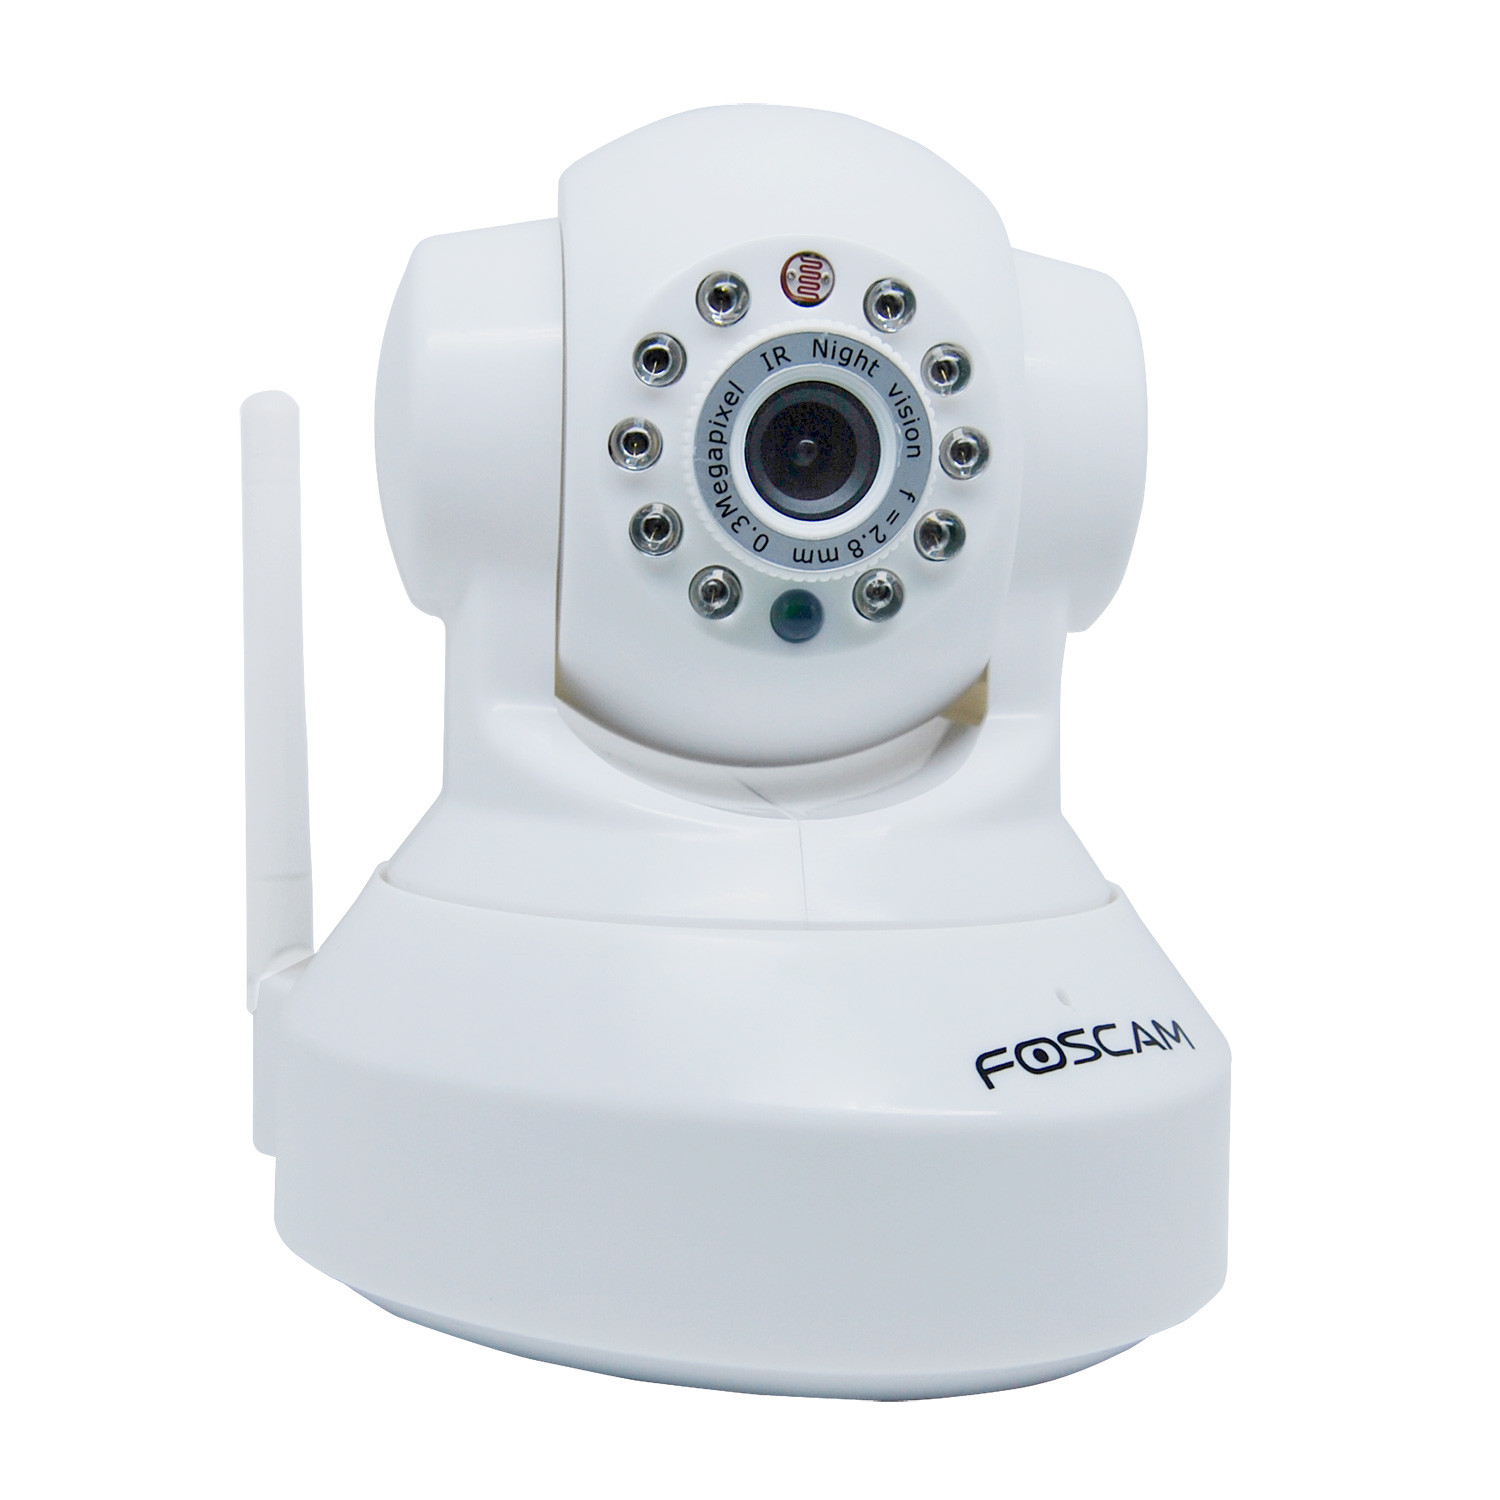 find foscam camera on network